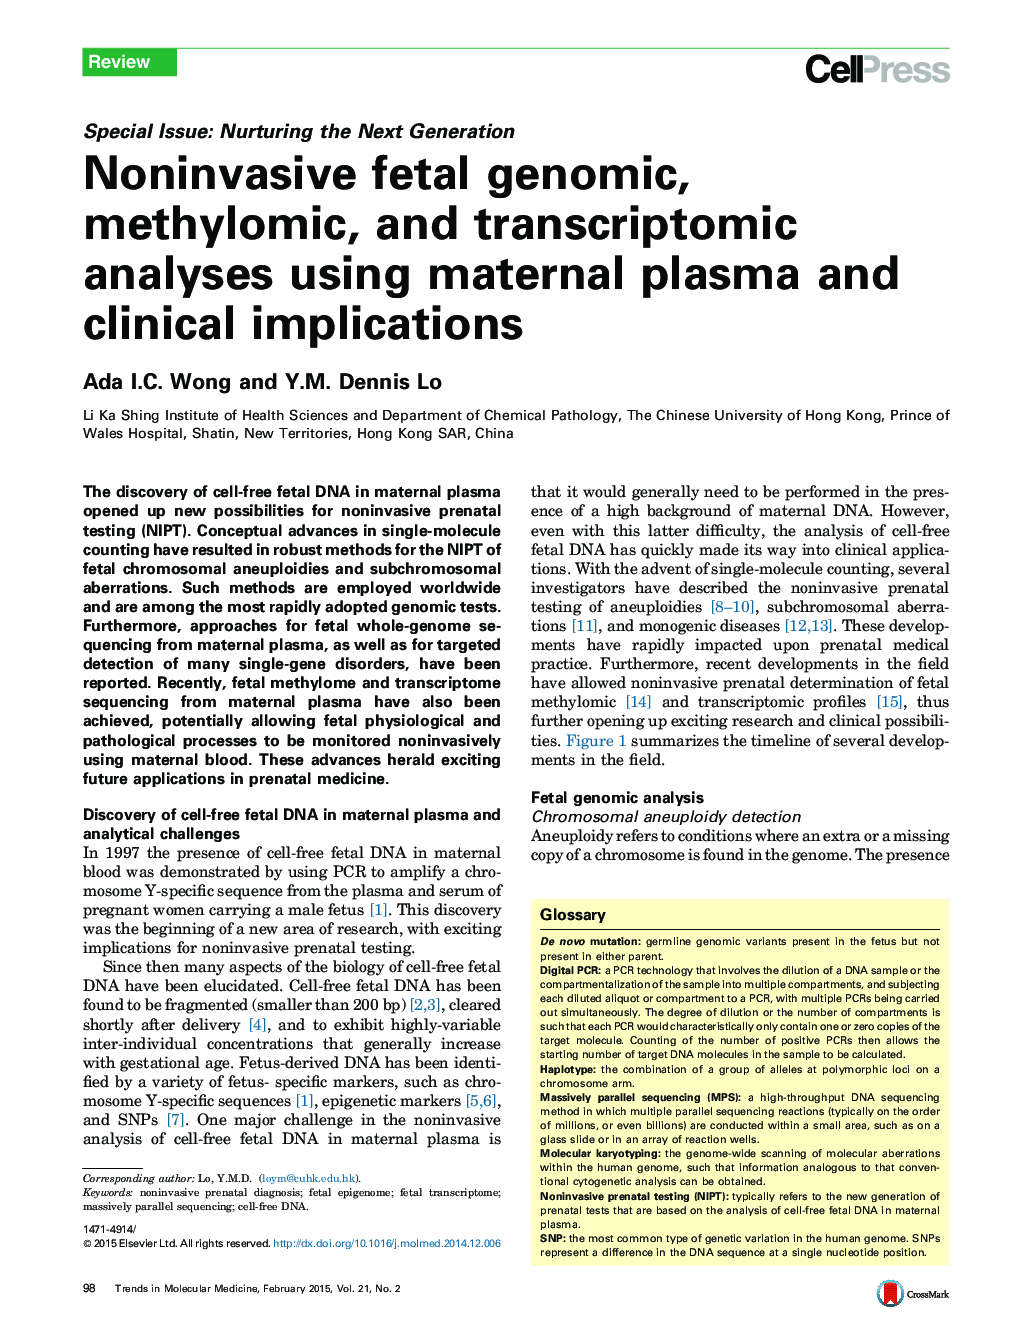 تجزیه و تحلیل ژنوم، متیوموم و ترانسکتومیومی جنین غیر جنینی با استفاده از پلاسمای مادر و معاینات بالینی 